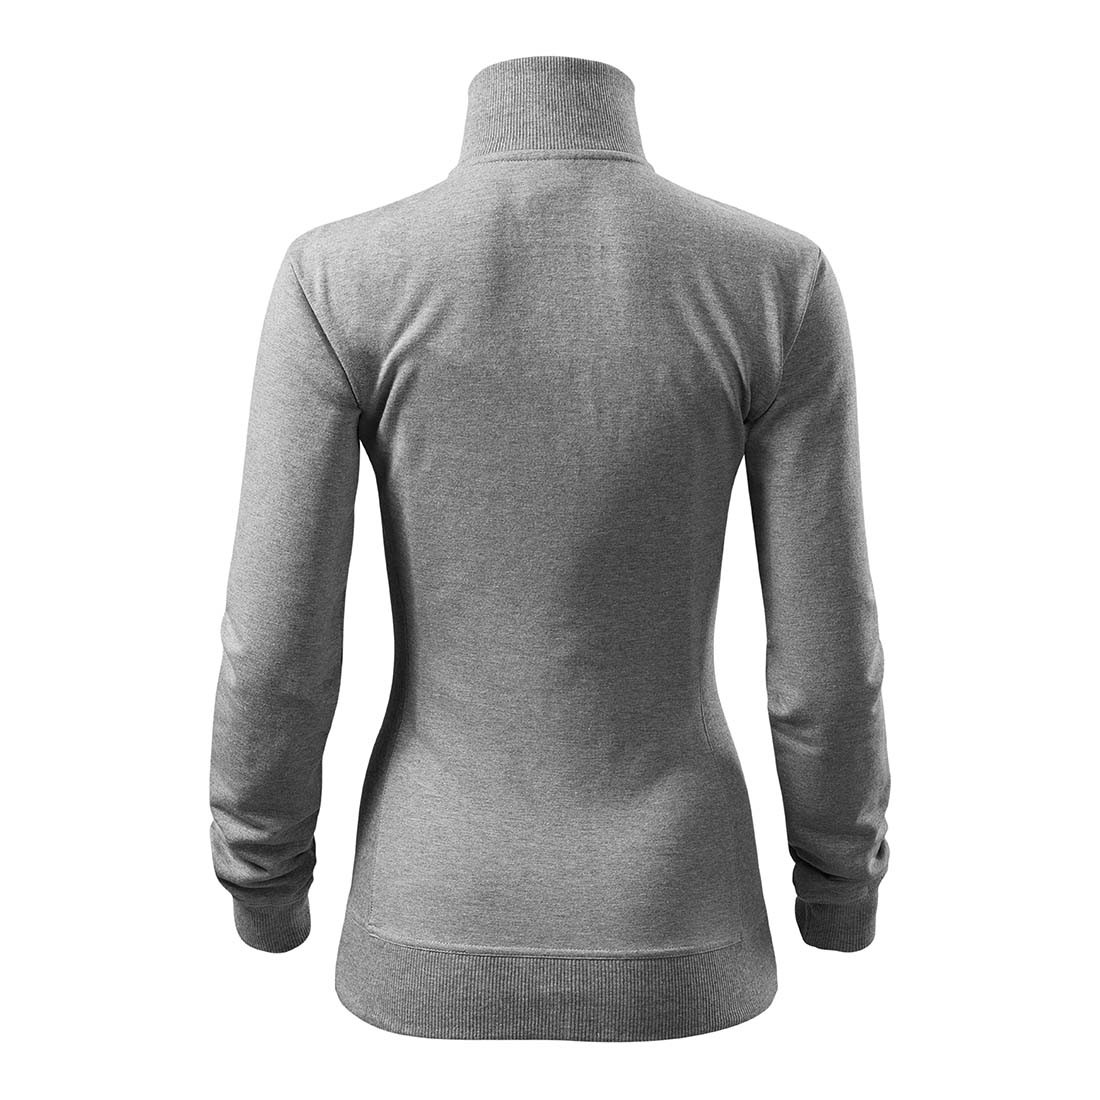 Sweatshirt VIVA pour femmes - Les vêtements de protection